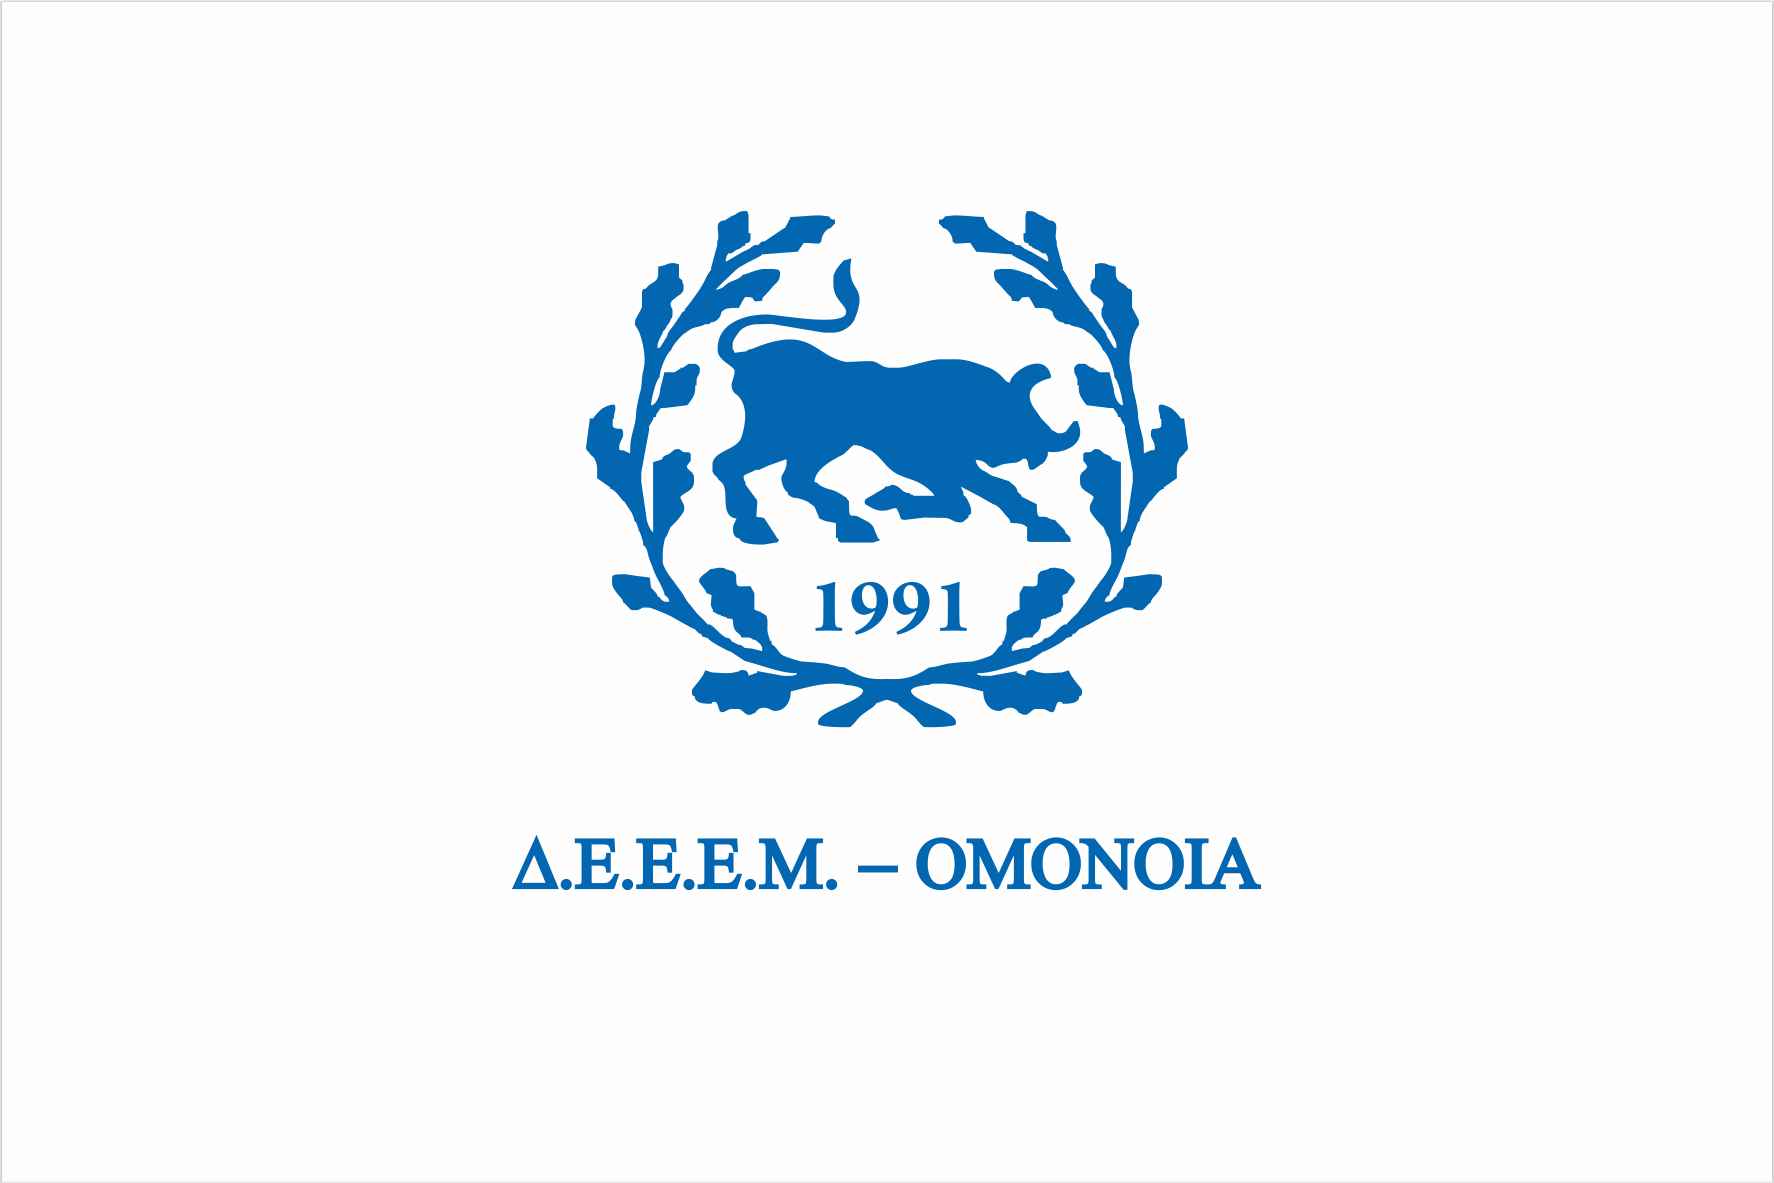 Καταγγελία των παραβιάσεων στην διαδικασία της Απογραφής στην Αλβανία από τη ΔΕΕΜ Ομόνοια